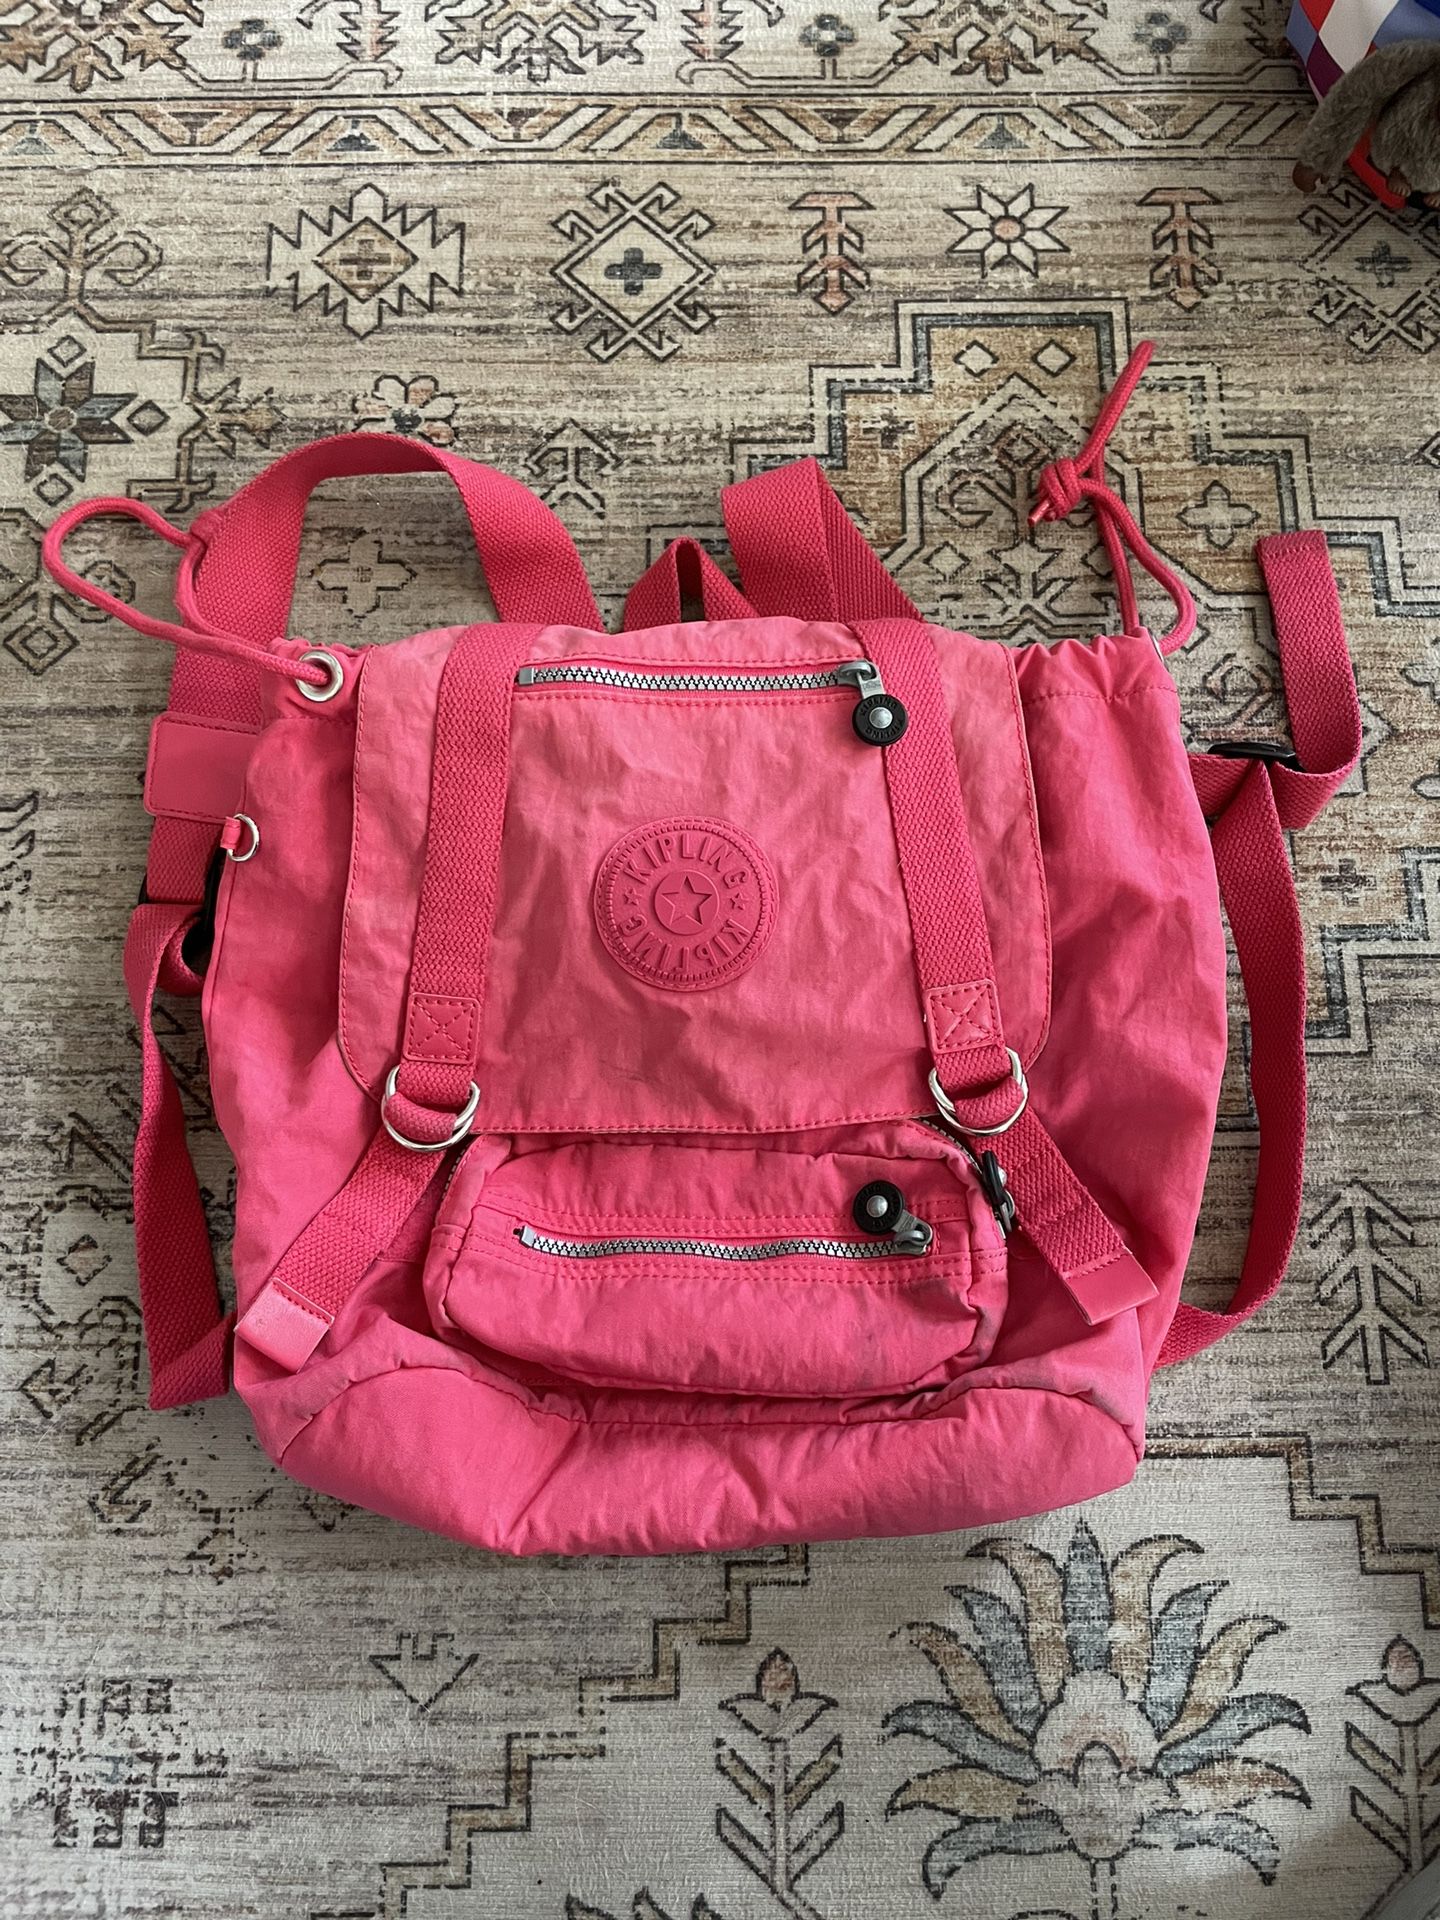 Kipling Hot Pink Backpack